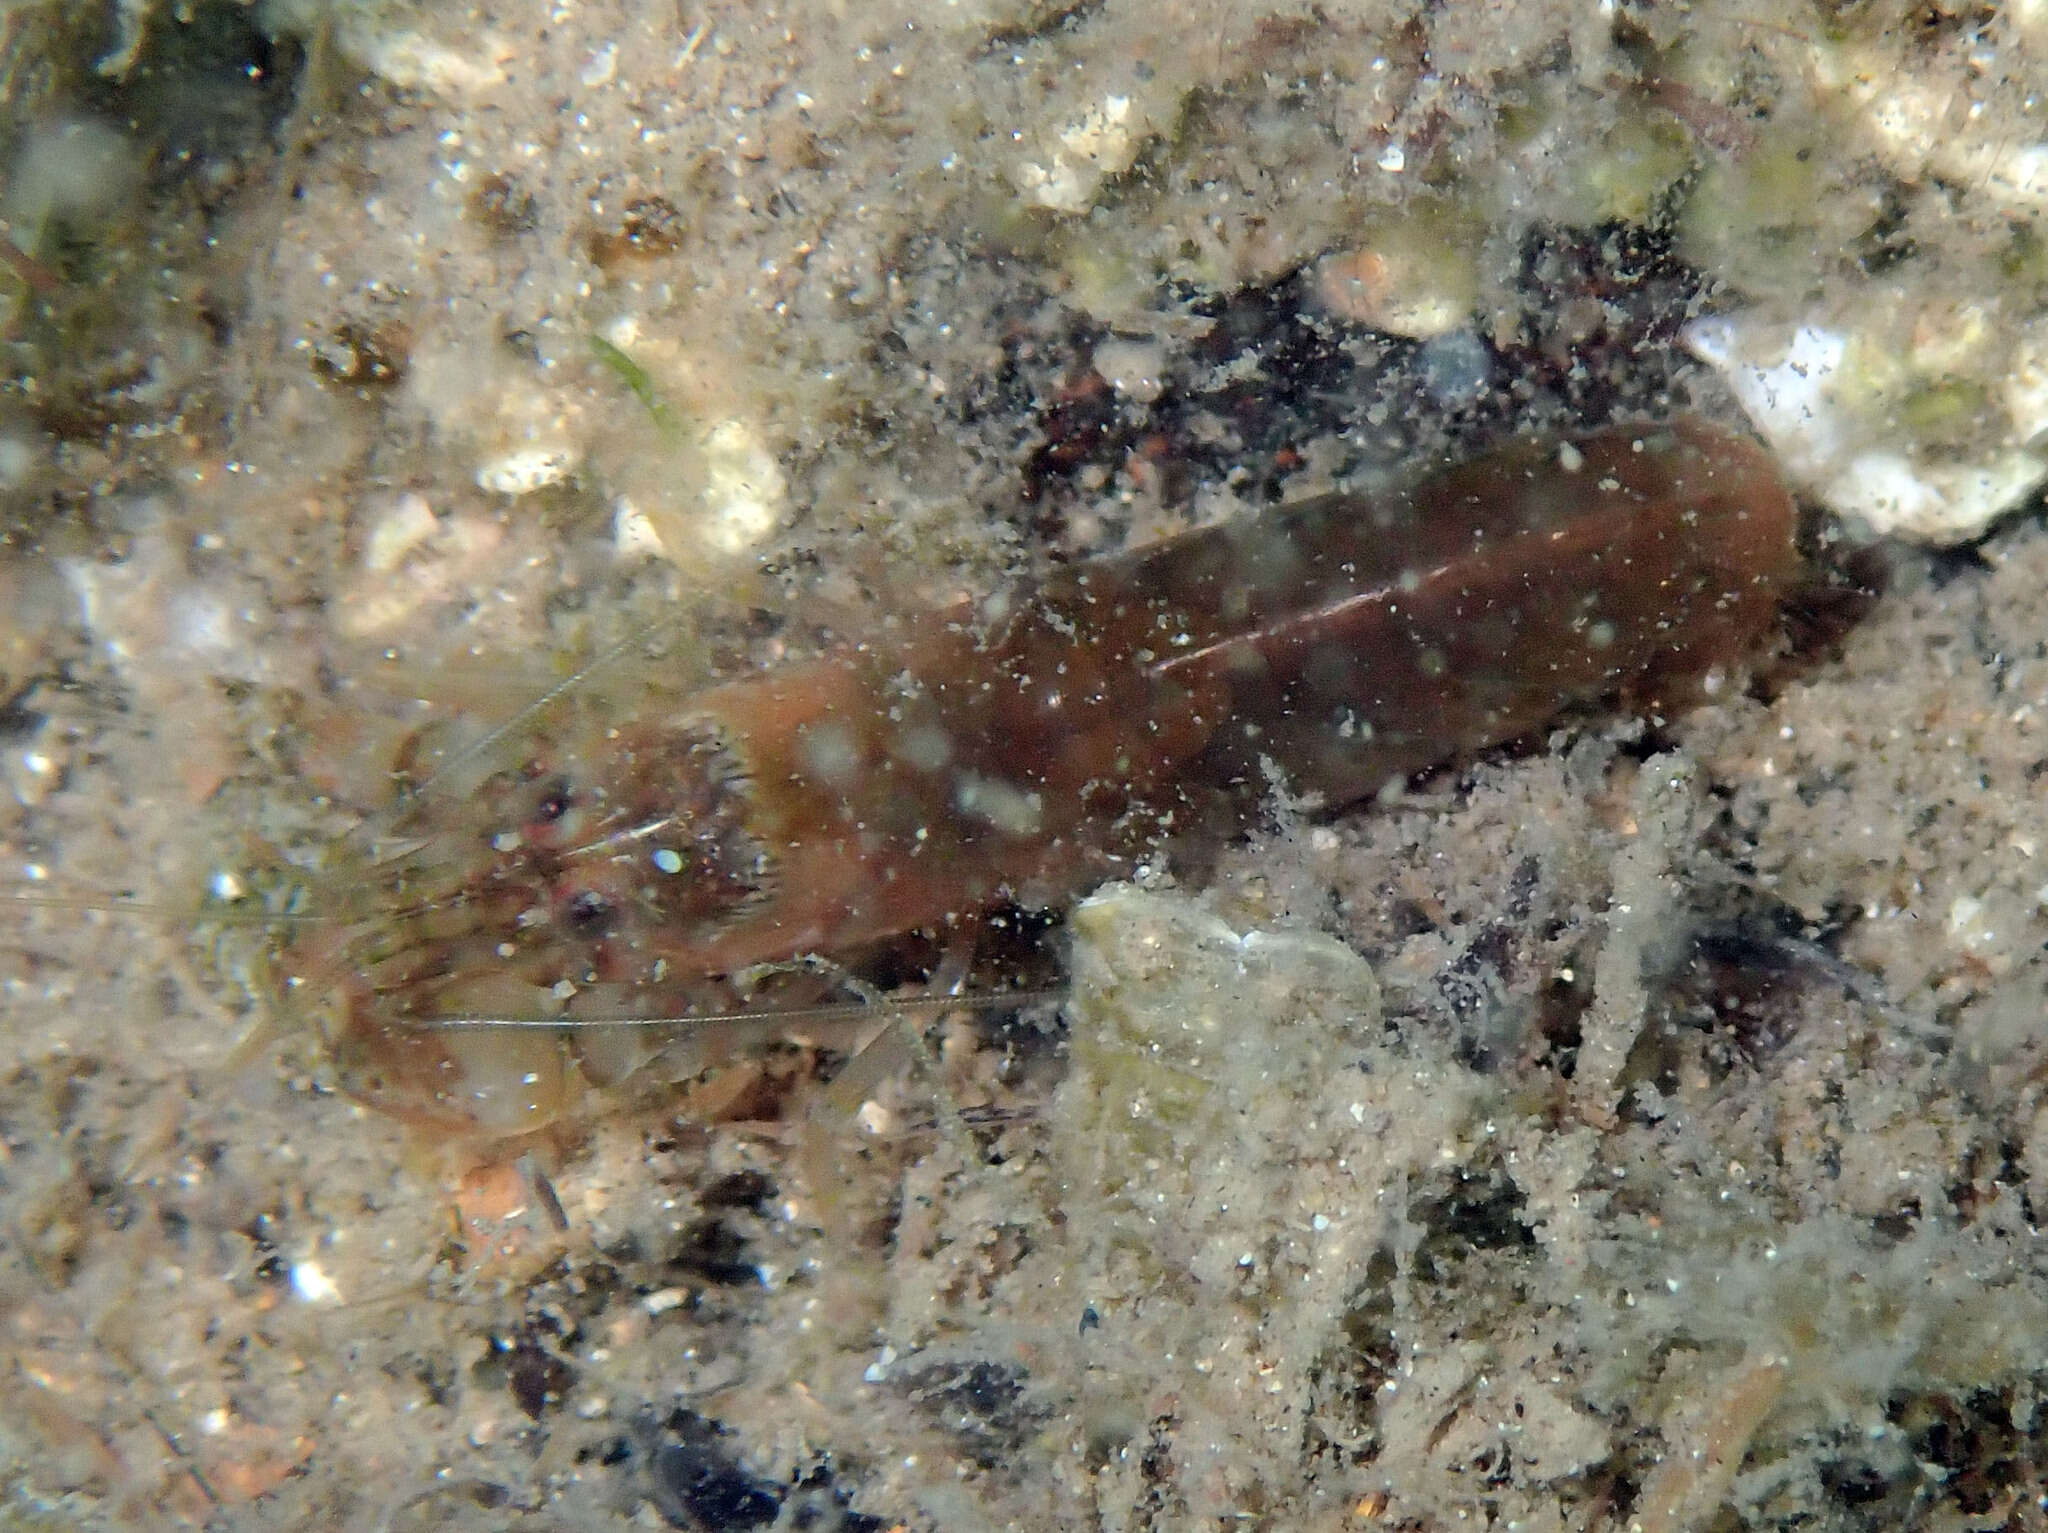 Image of Mediterranean snapping prawn